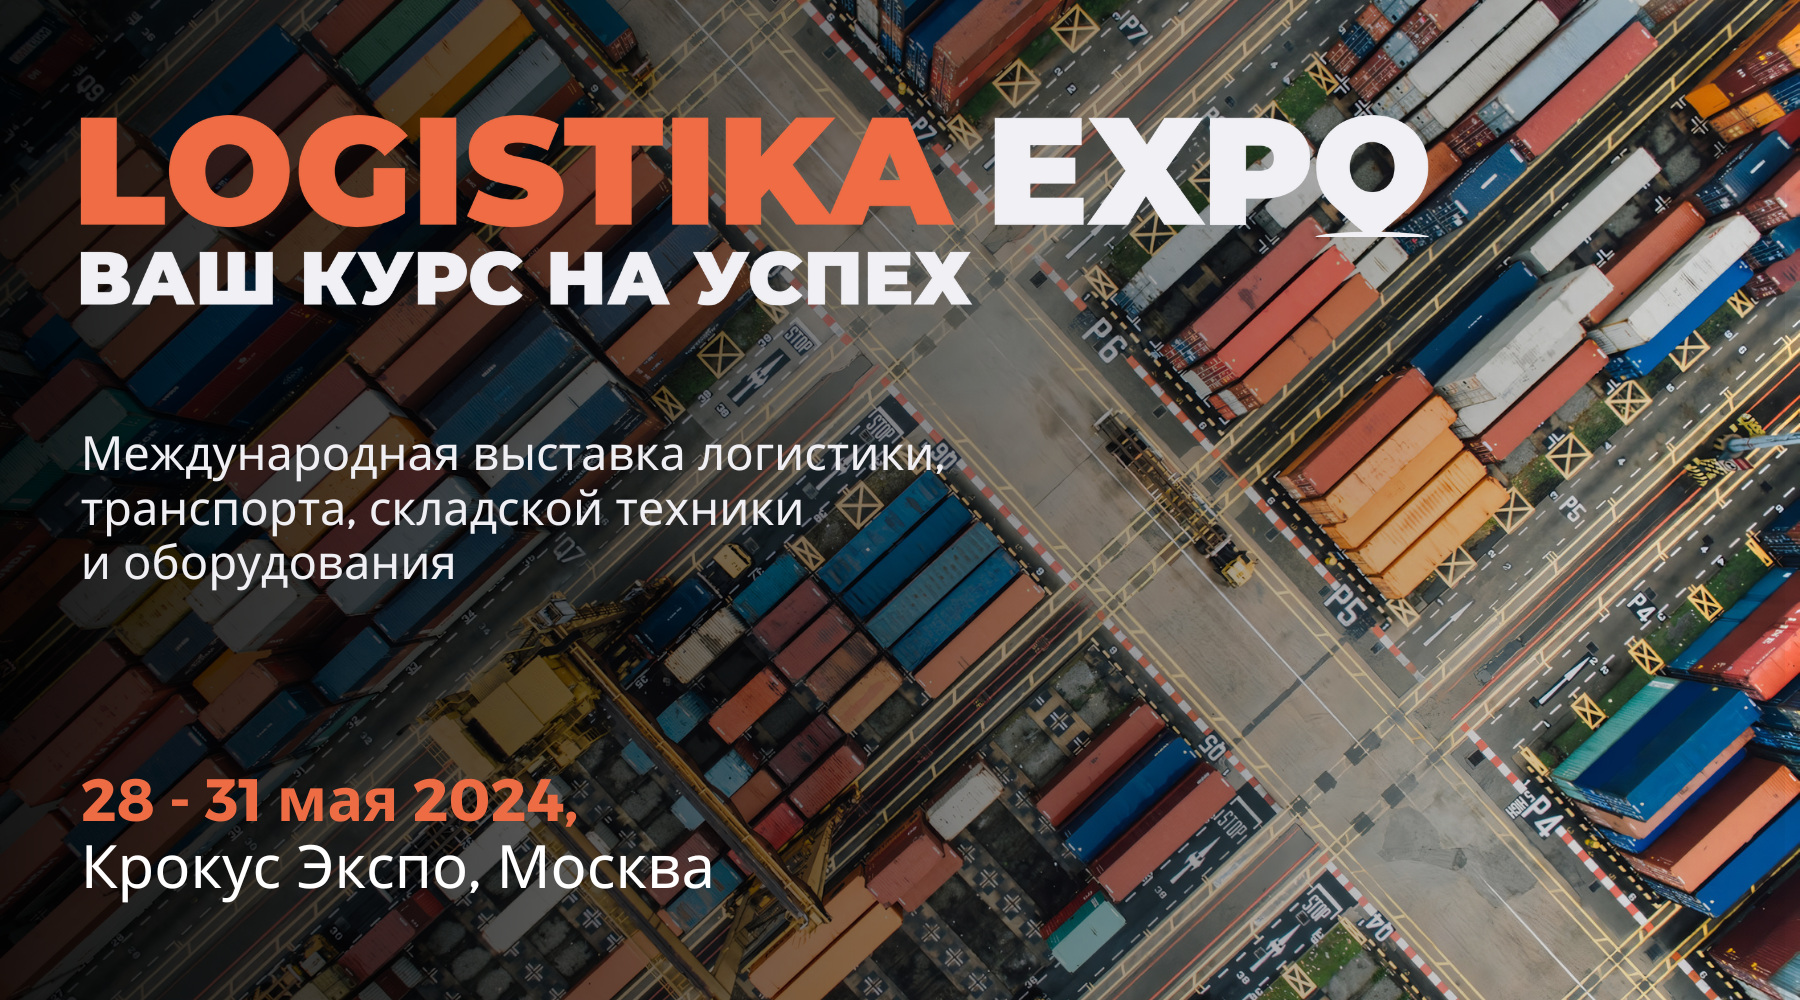 Logistika Expo: новые возможности для логистических компаний